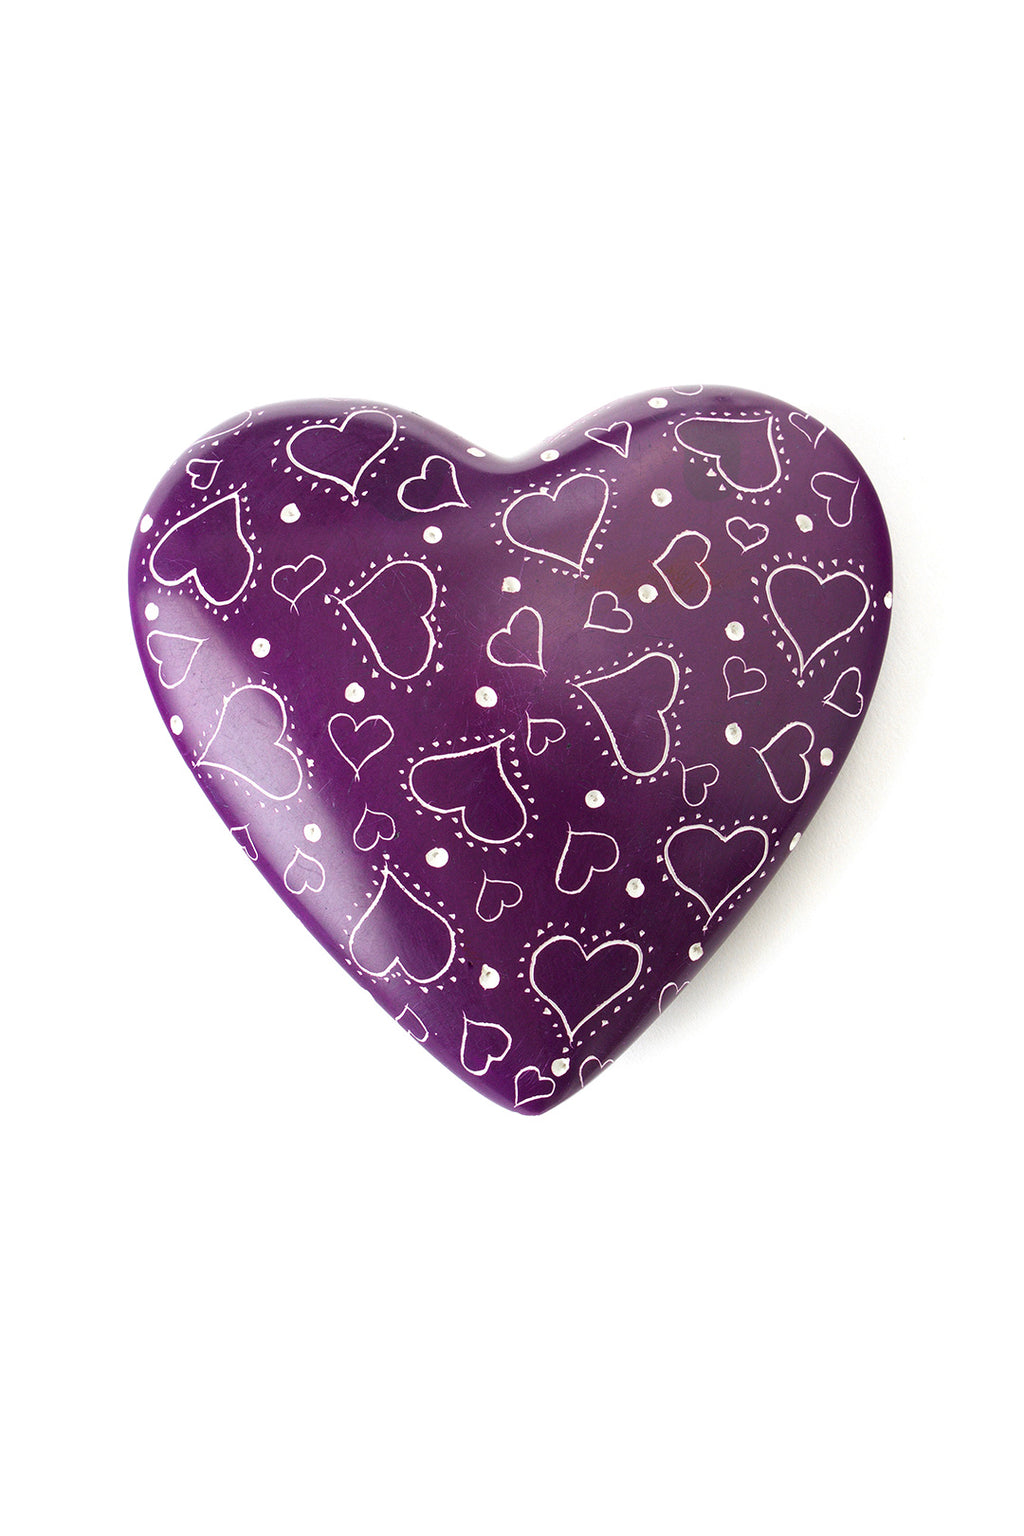 Much Love Purple Soapstone Heart Keepsake Default Title